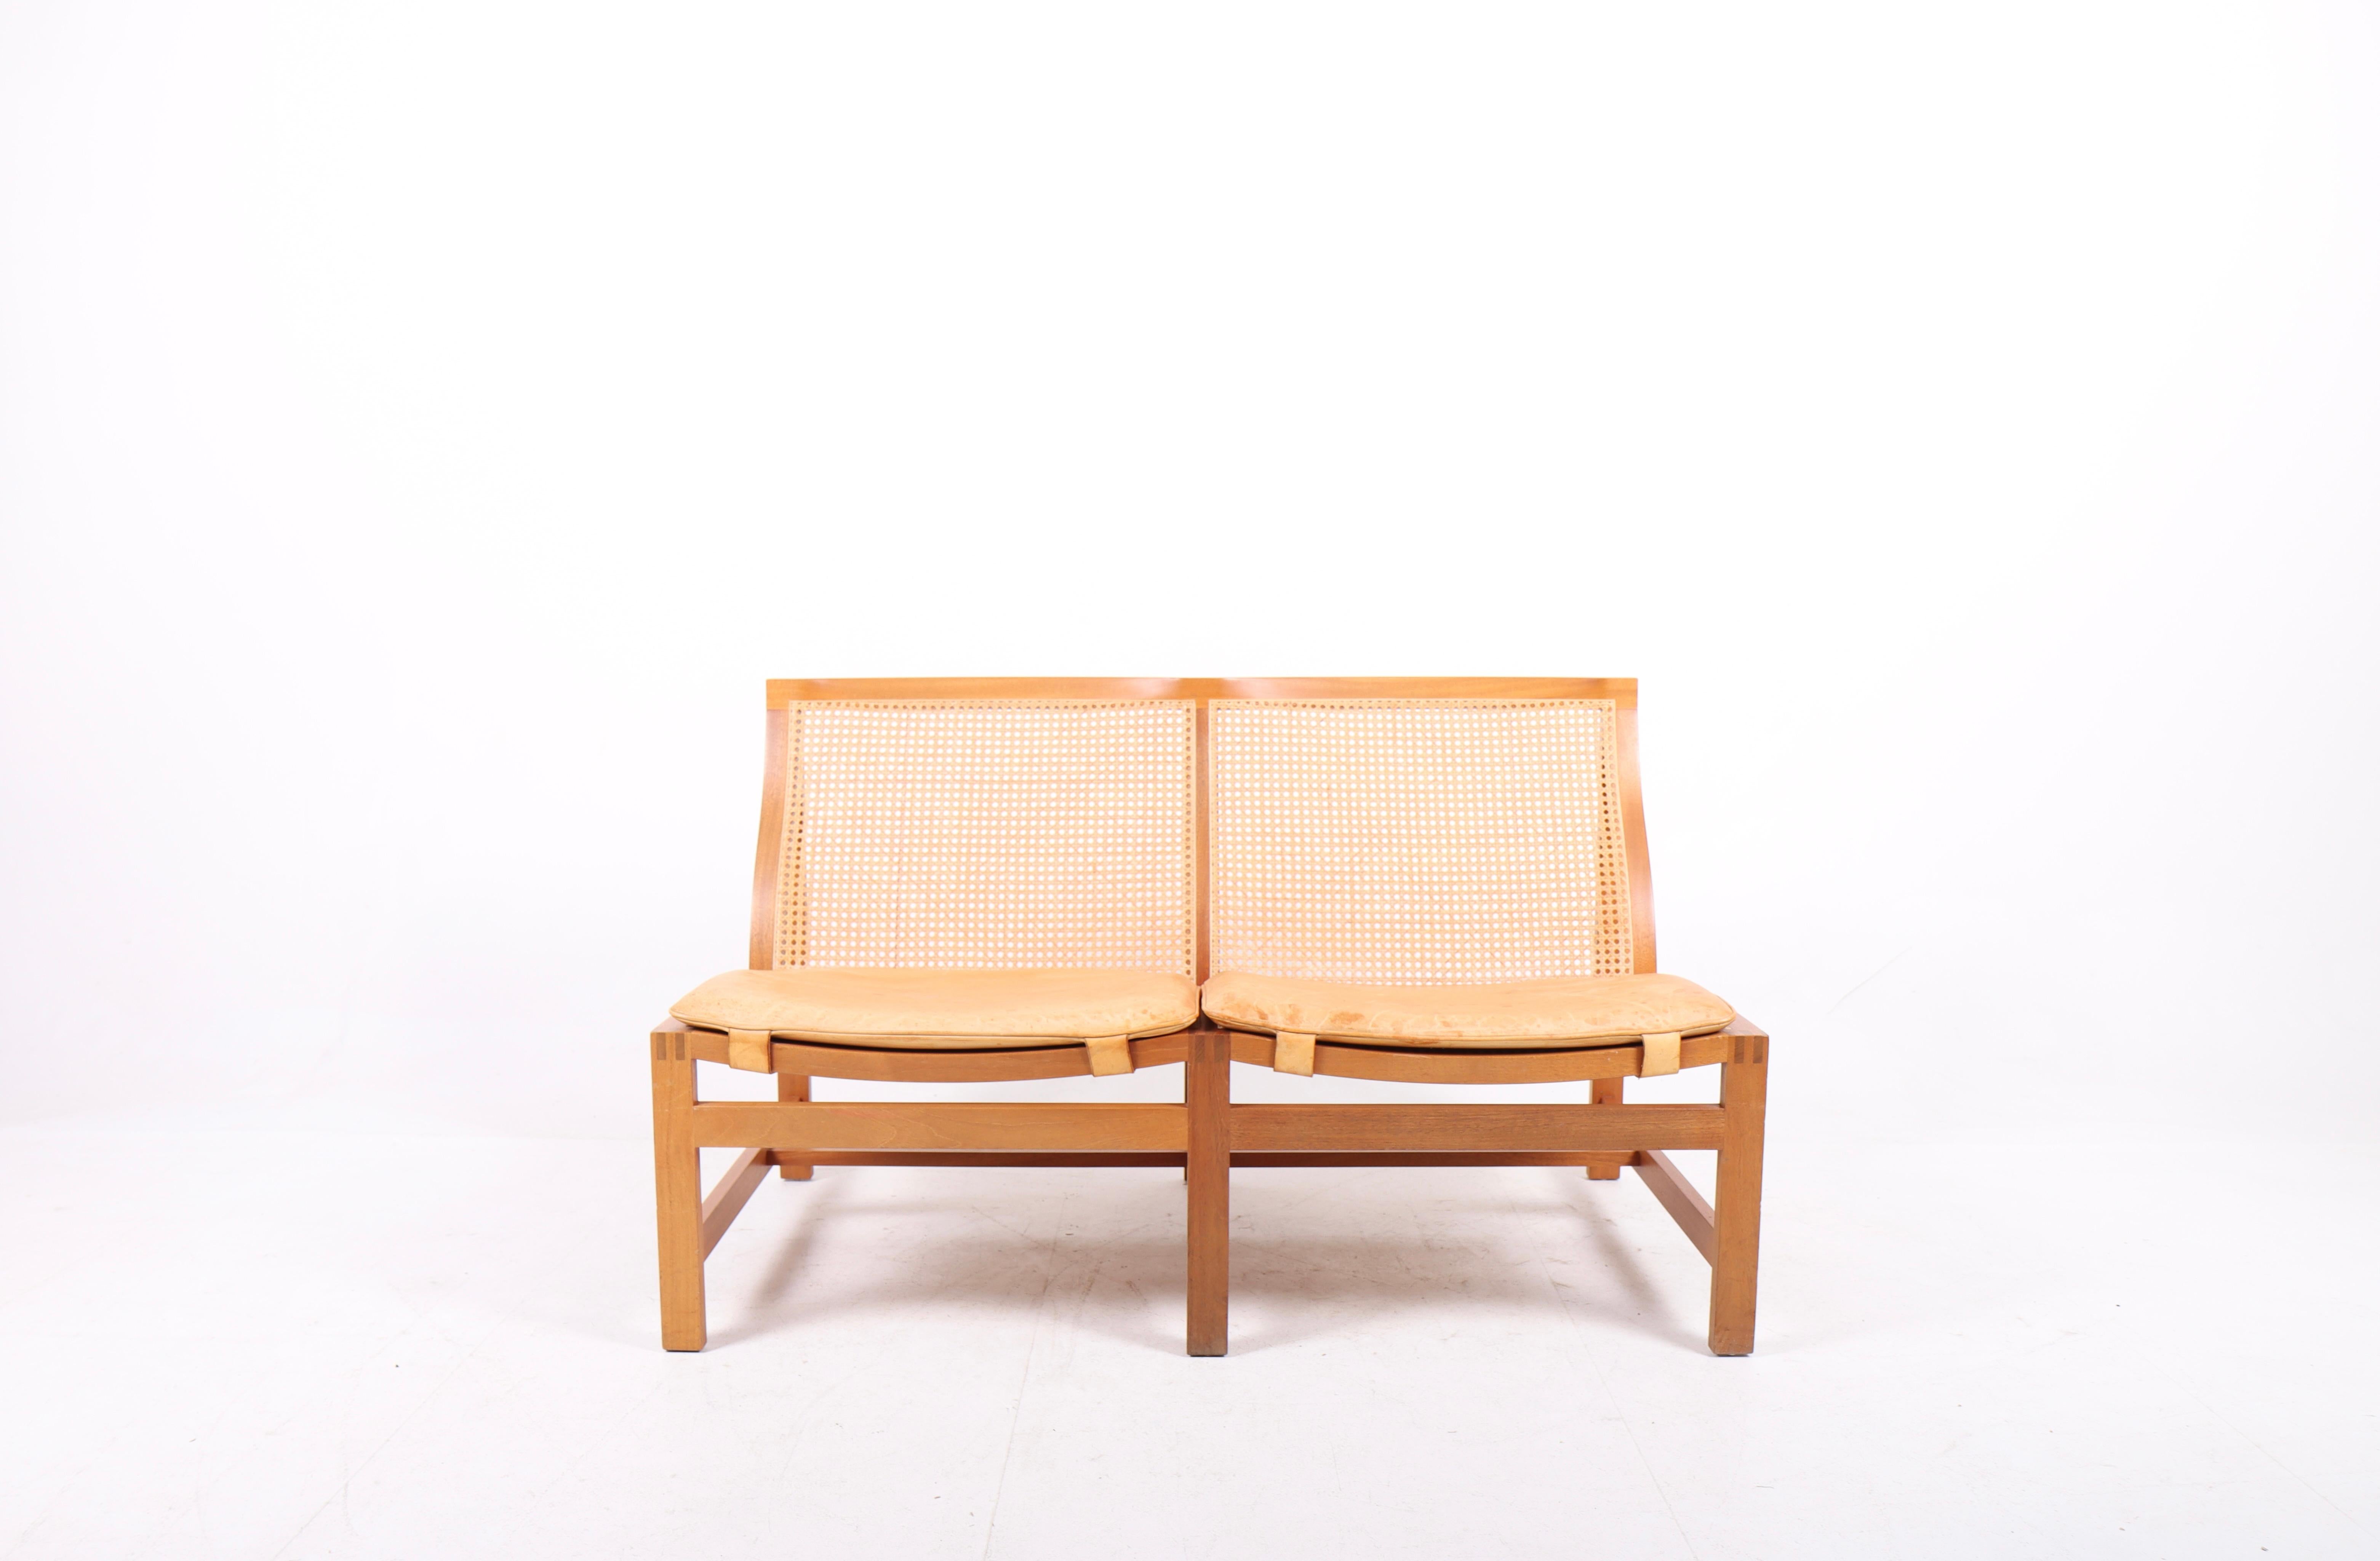 Elegantes Sofa mit Mahagoni-Rahmen und französischem Caning in Sitz und Rücken. Sitzkissen aus patiniertem Leder. Entworfen von den dänischen Architekten Johnny Sørensen und Rud Thygesen.